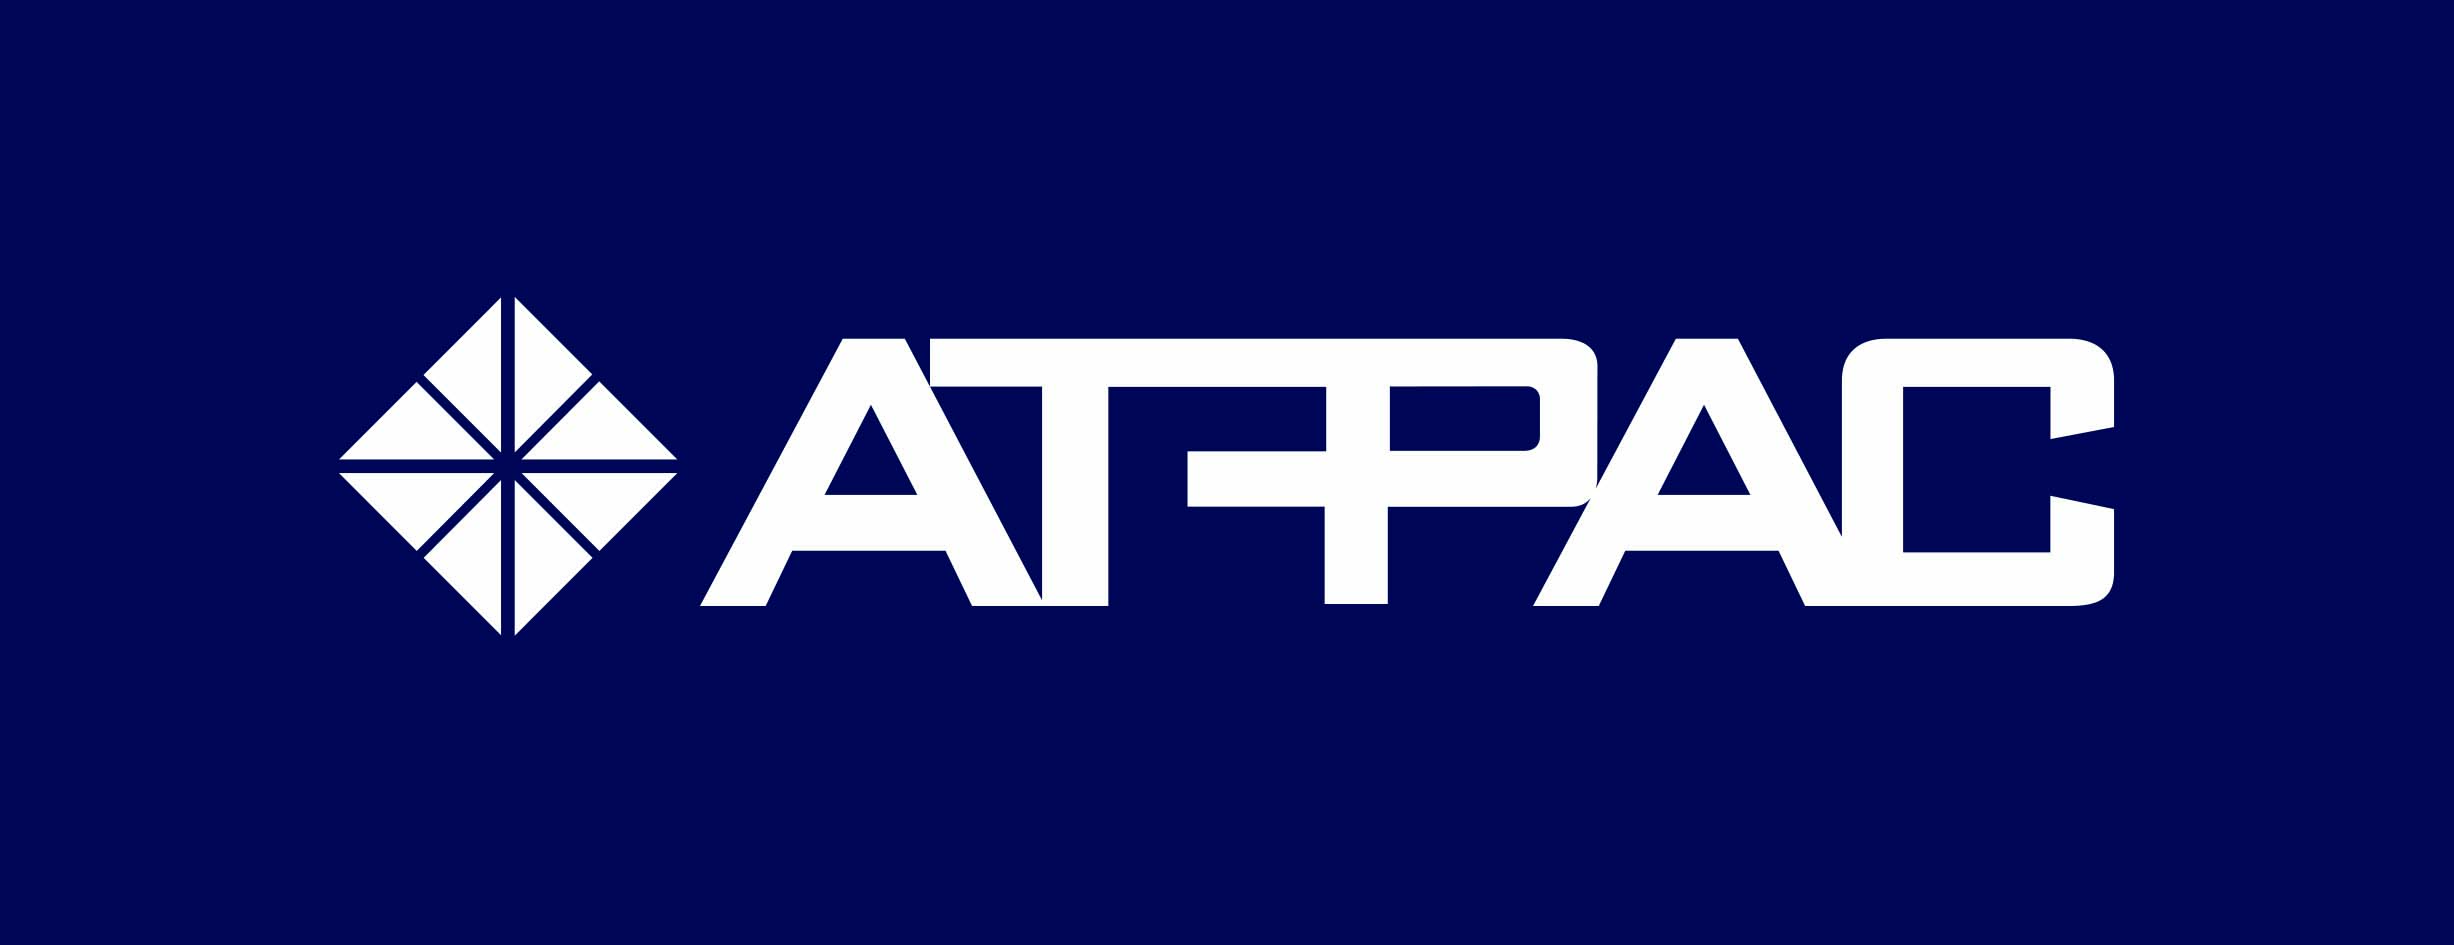 AT PAC logo for Kitja Services